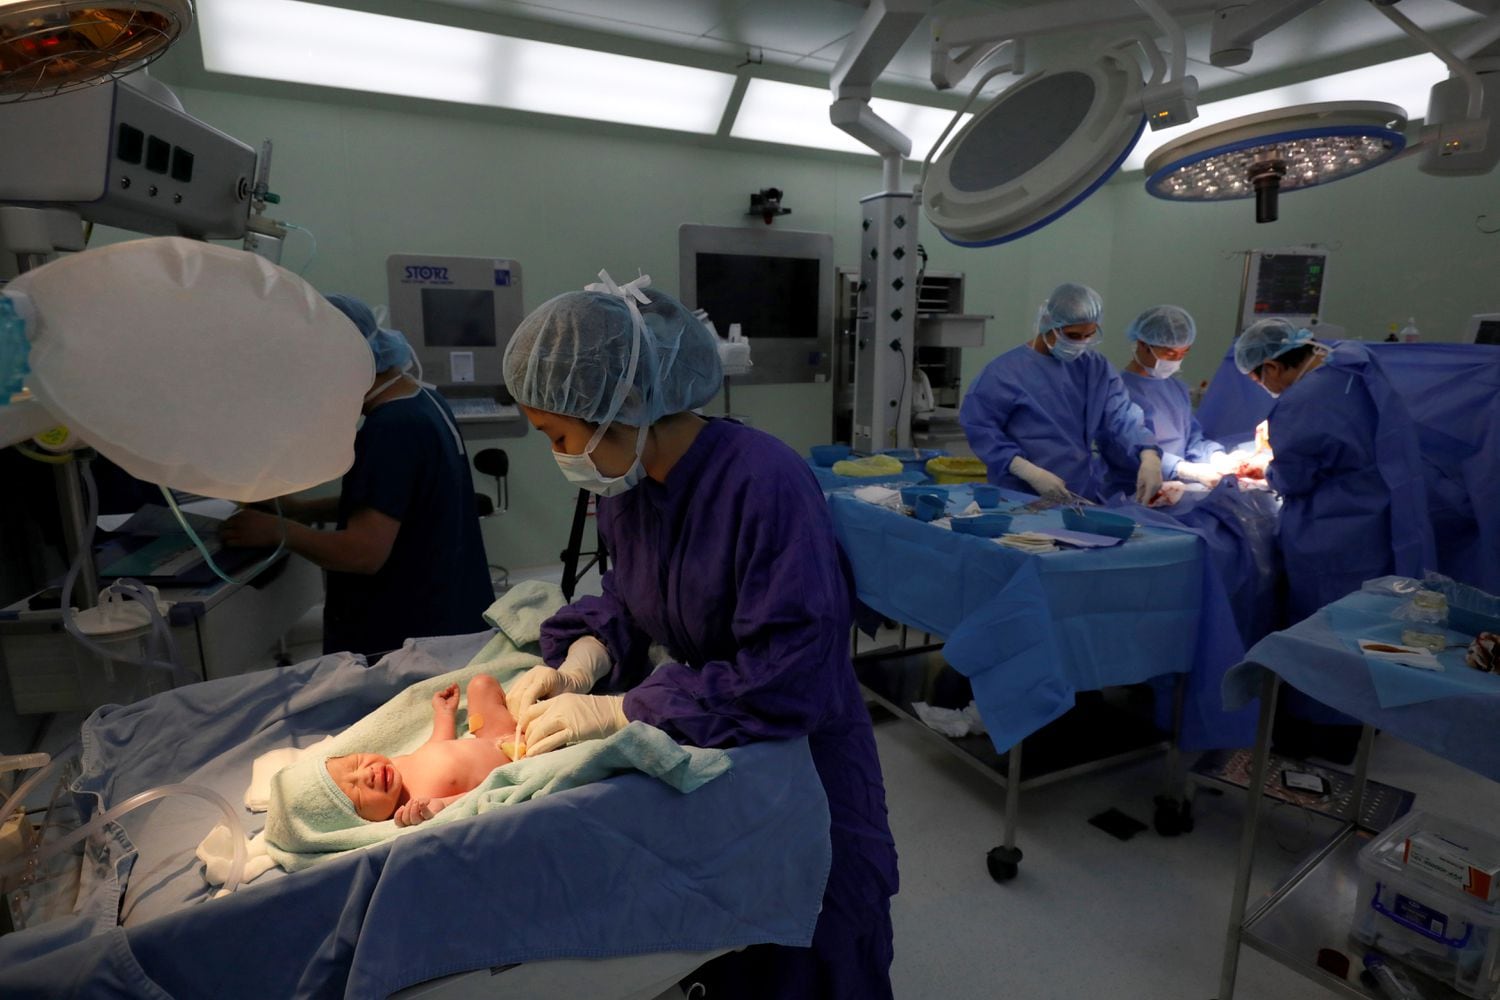 Enfermeira atende recém-nascido em hospital de Hanói (Vietnã), em 1º de abril.